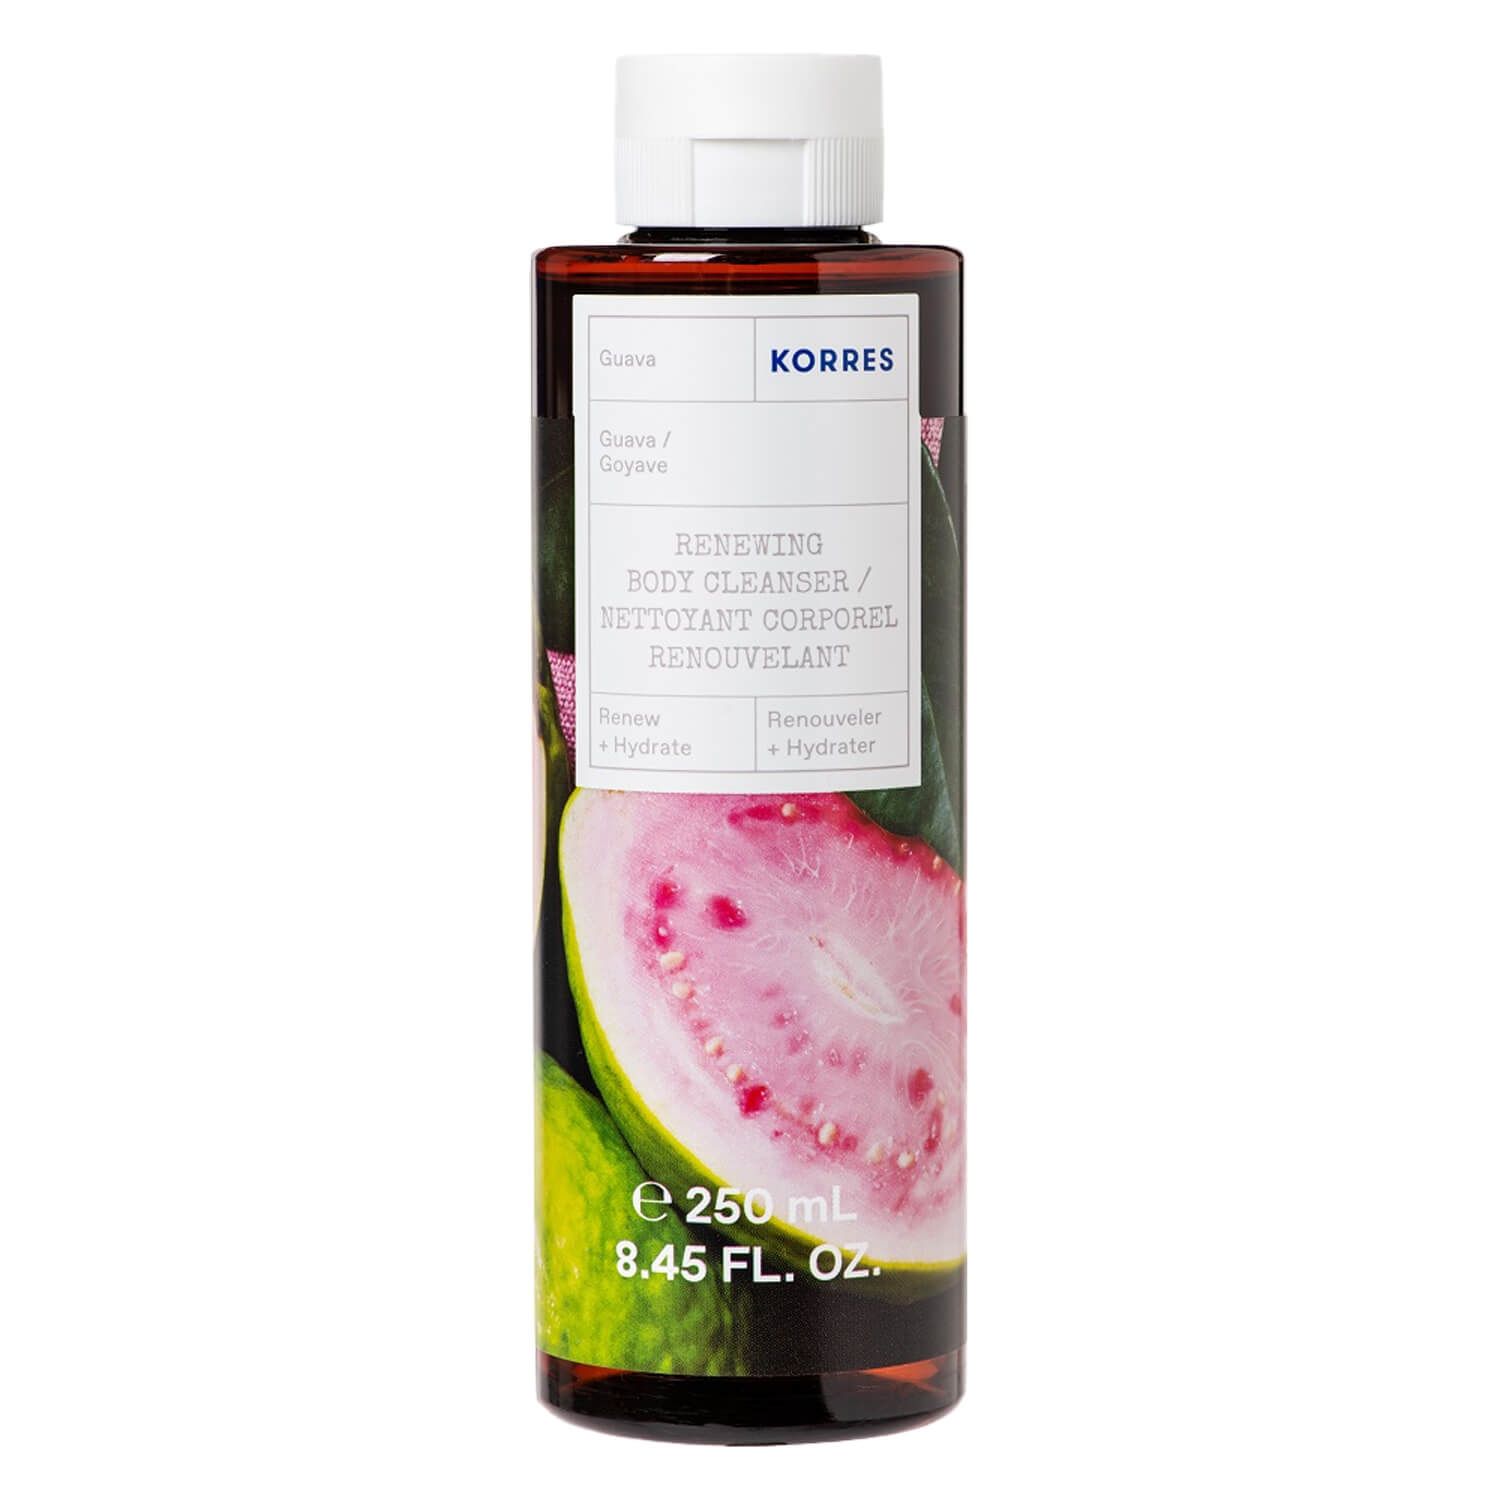 Produktbild von Korres Care - Guava Renewing Body Cleanser